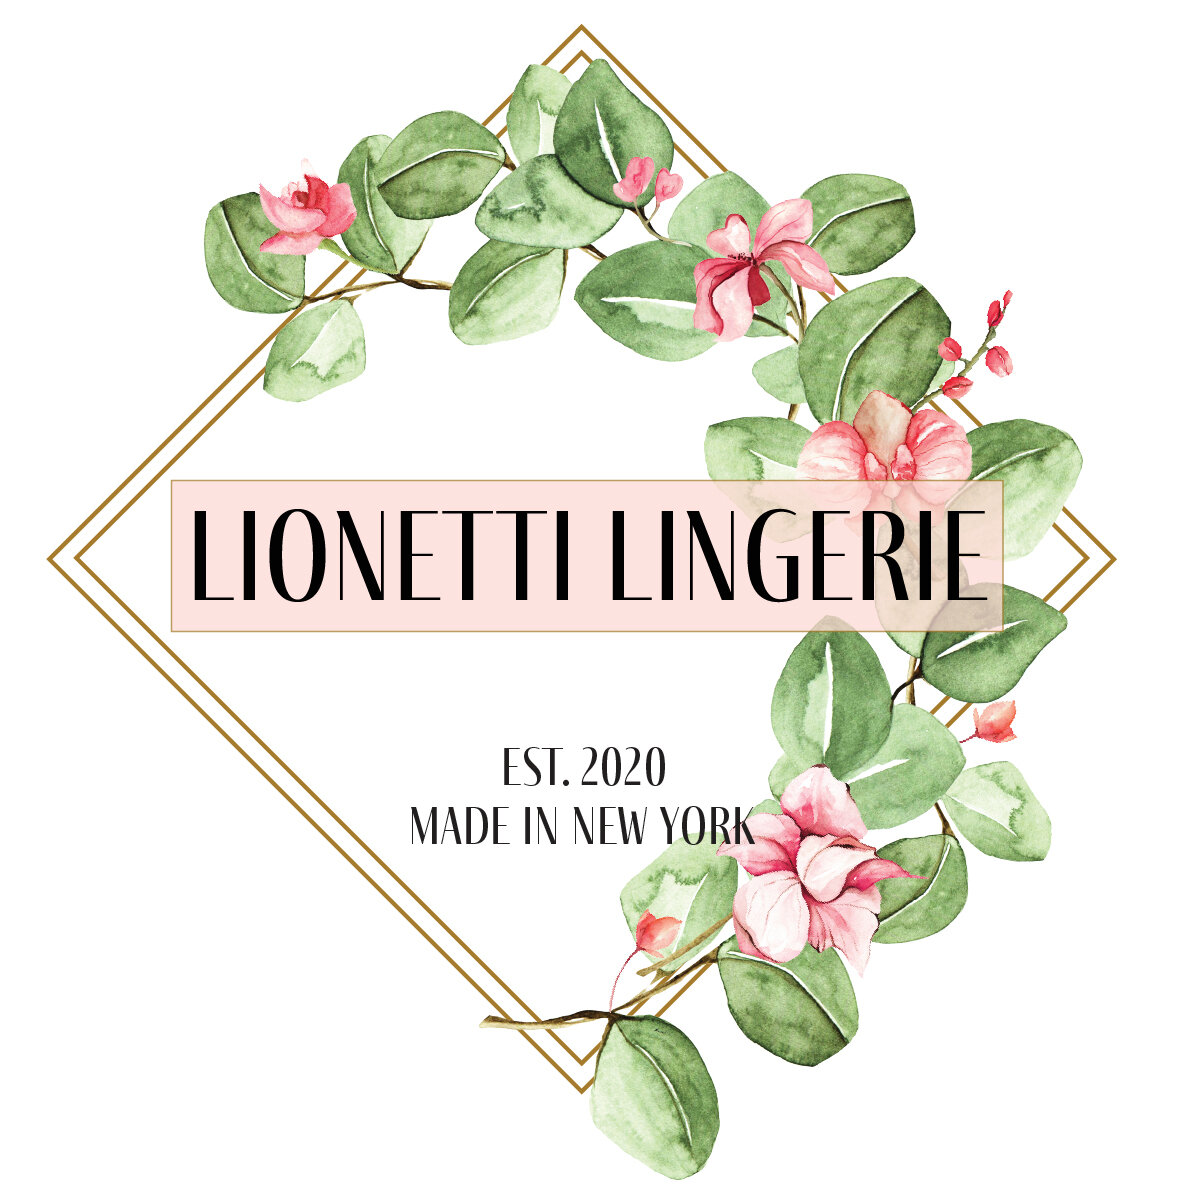 Lionetti Lingerie